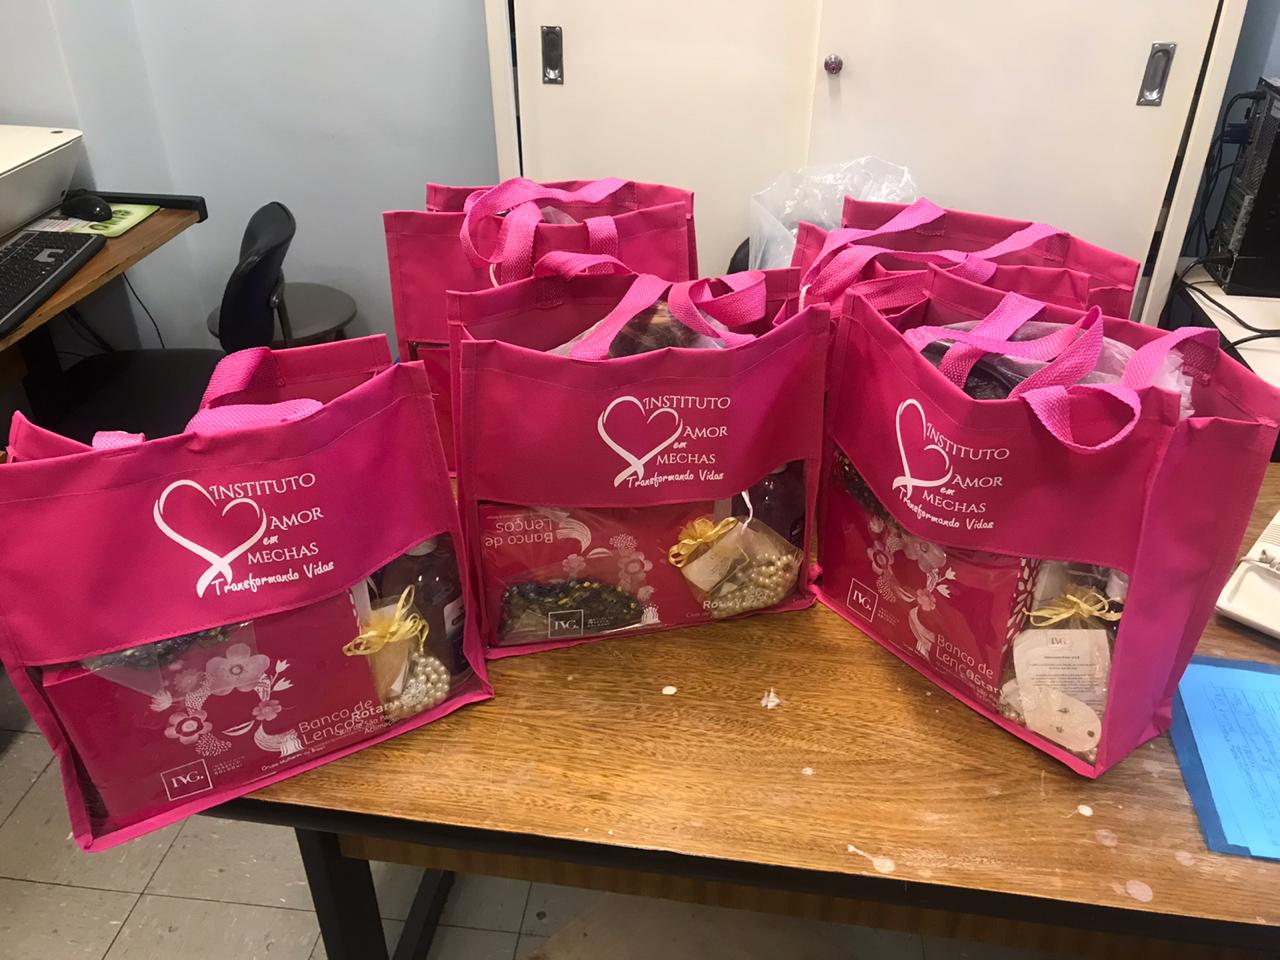 Foto das sacolas cheias de doações feitas pela Instituto Amor em Mechas.